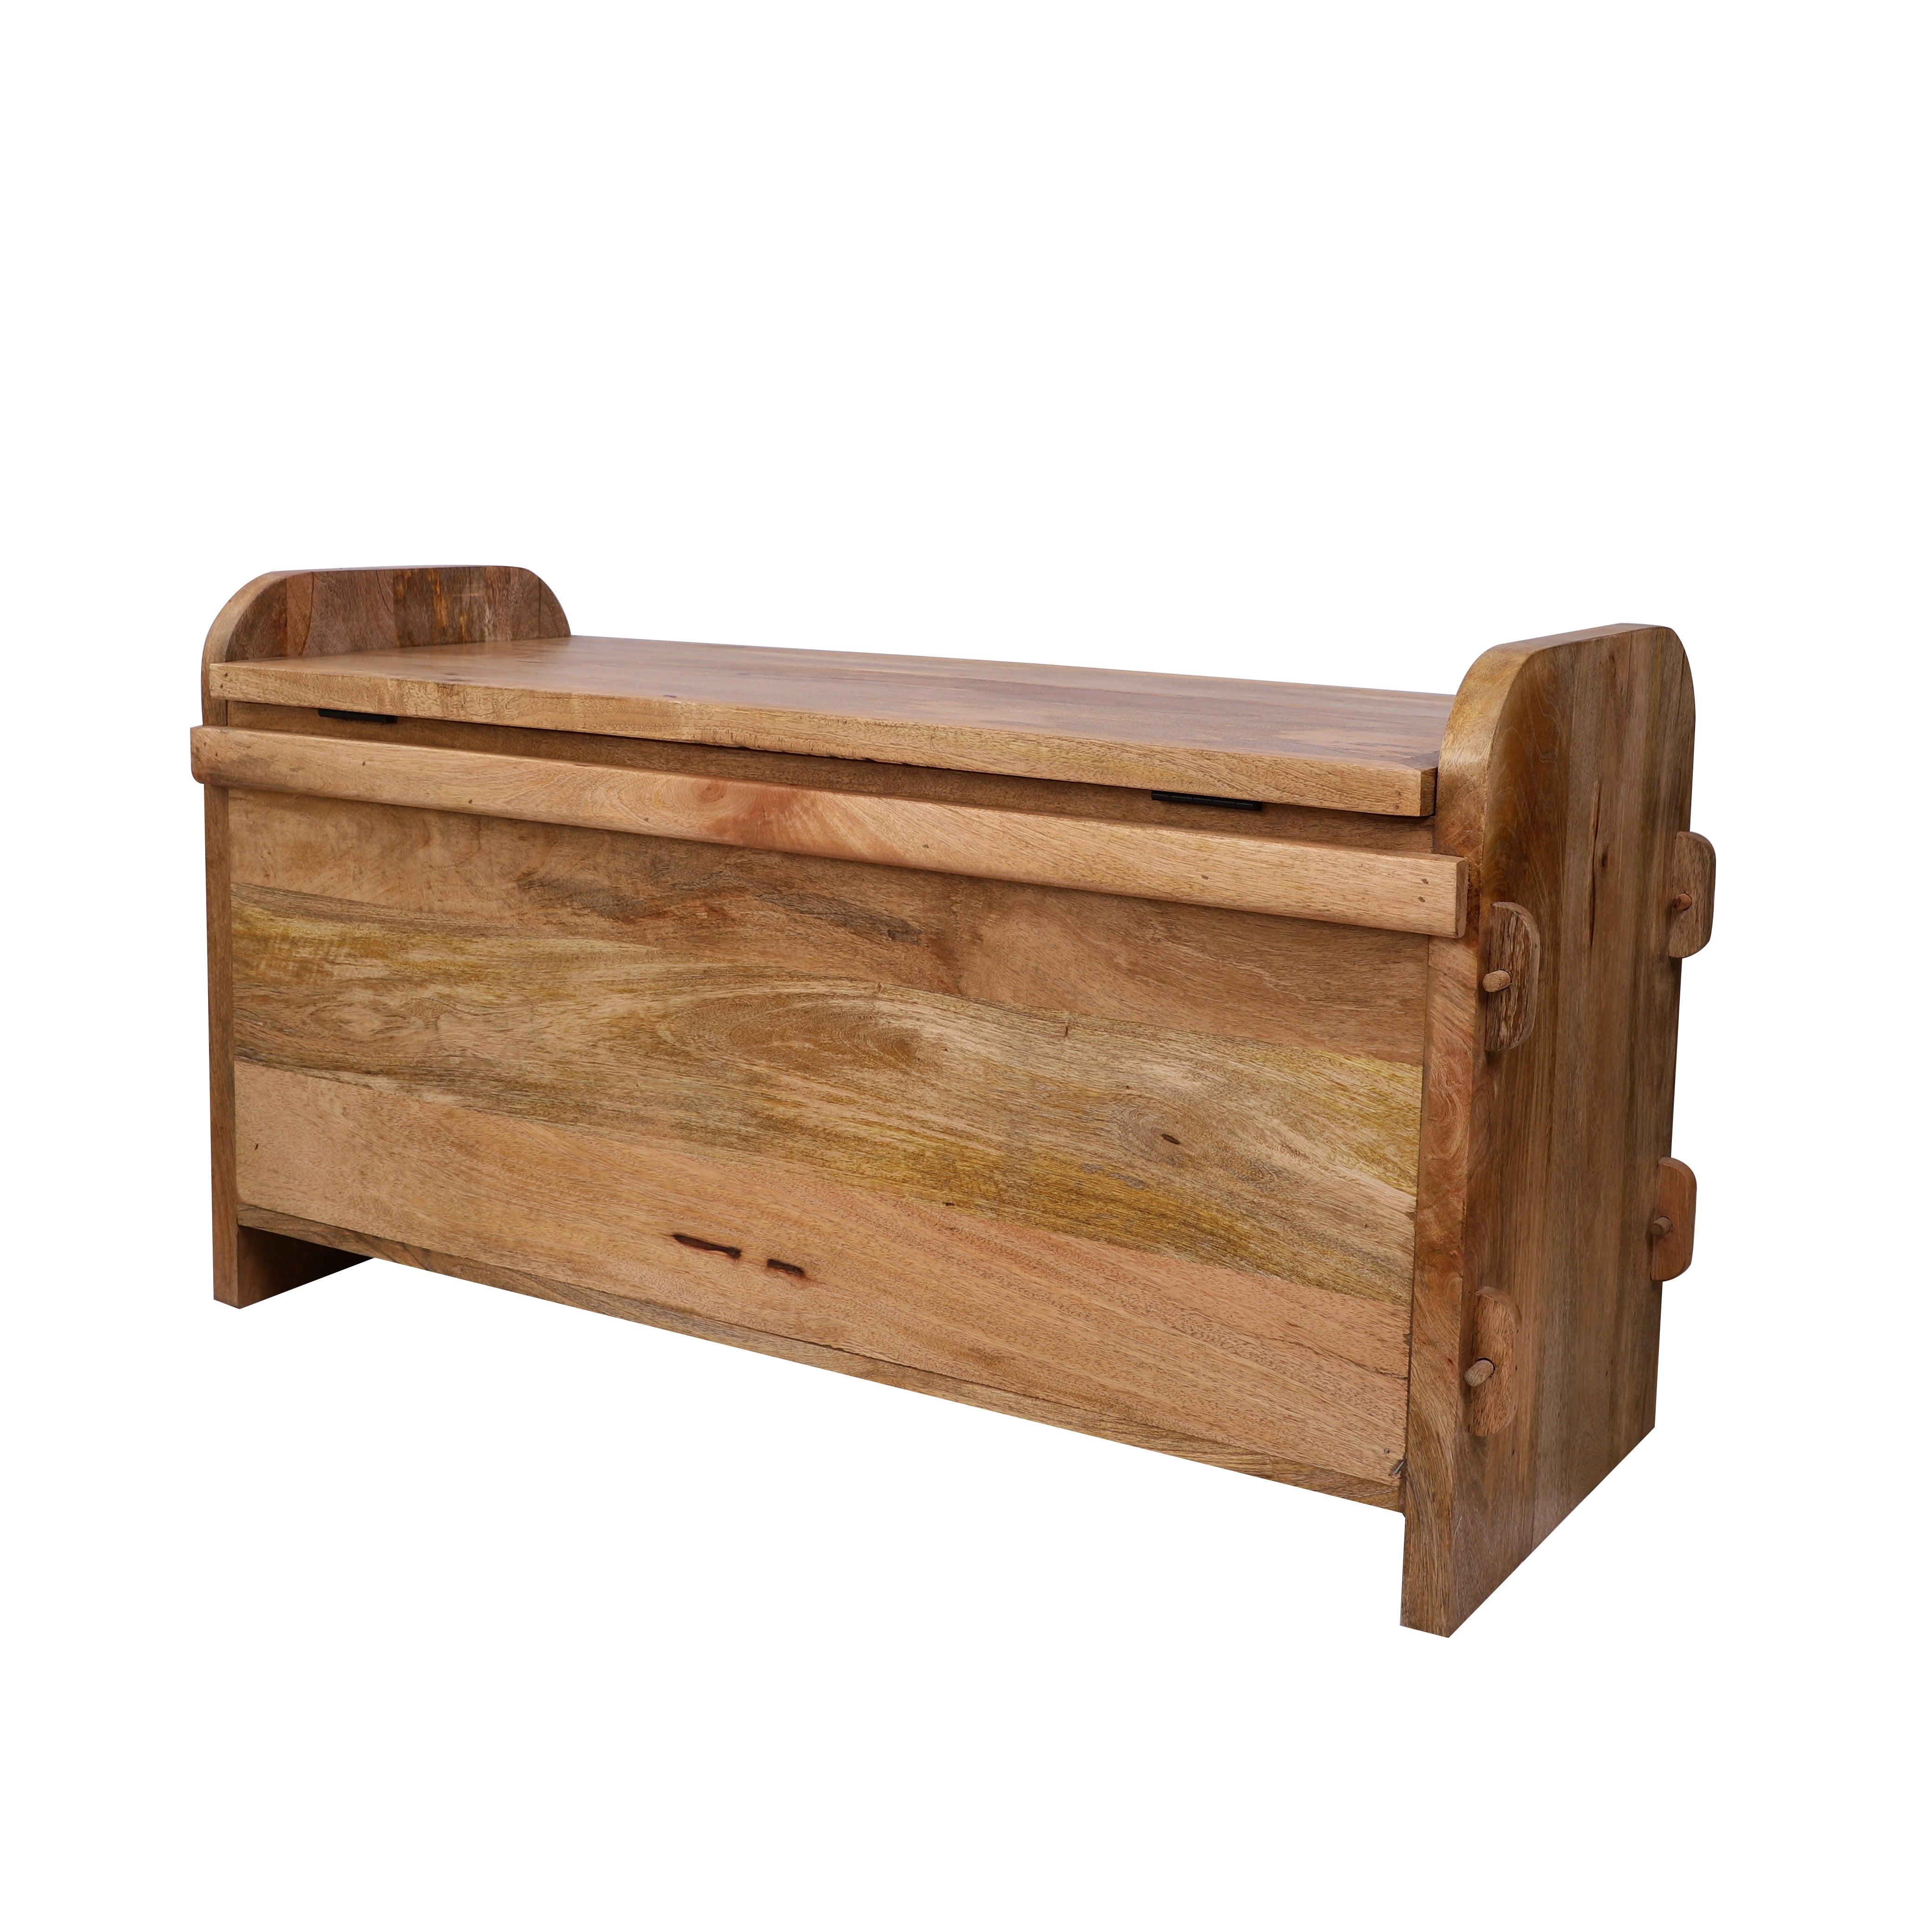 Carved Wooden Storage Box/Bench (Medium)